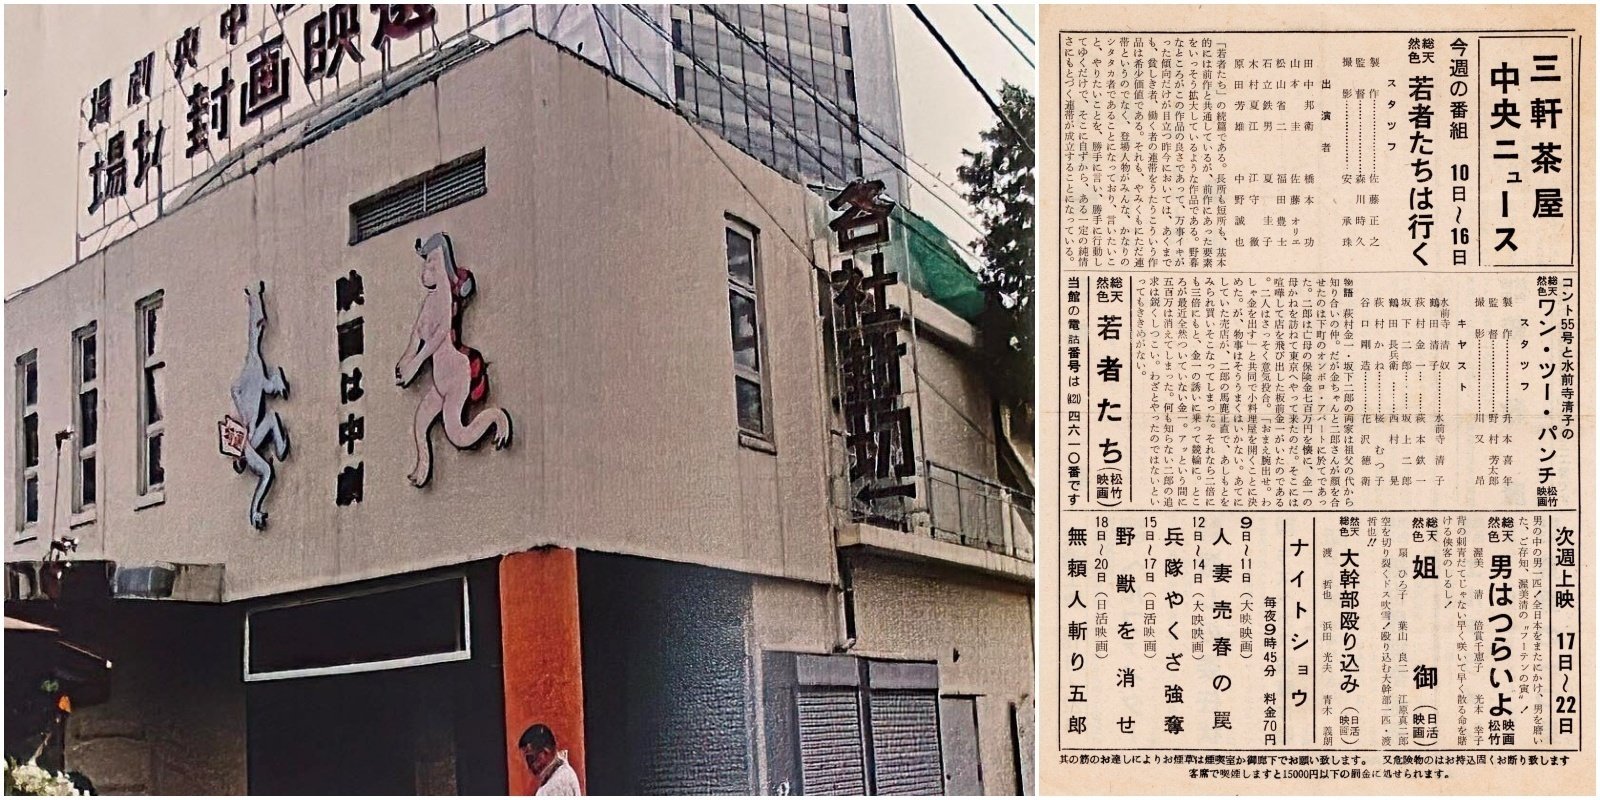 1966年 映画館看板用ポスター】日本暗黒街 - コレクション